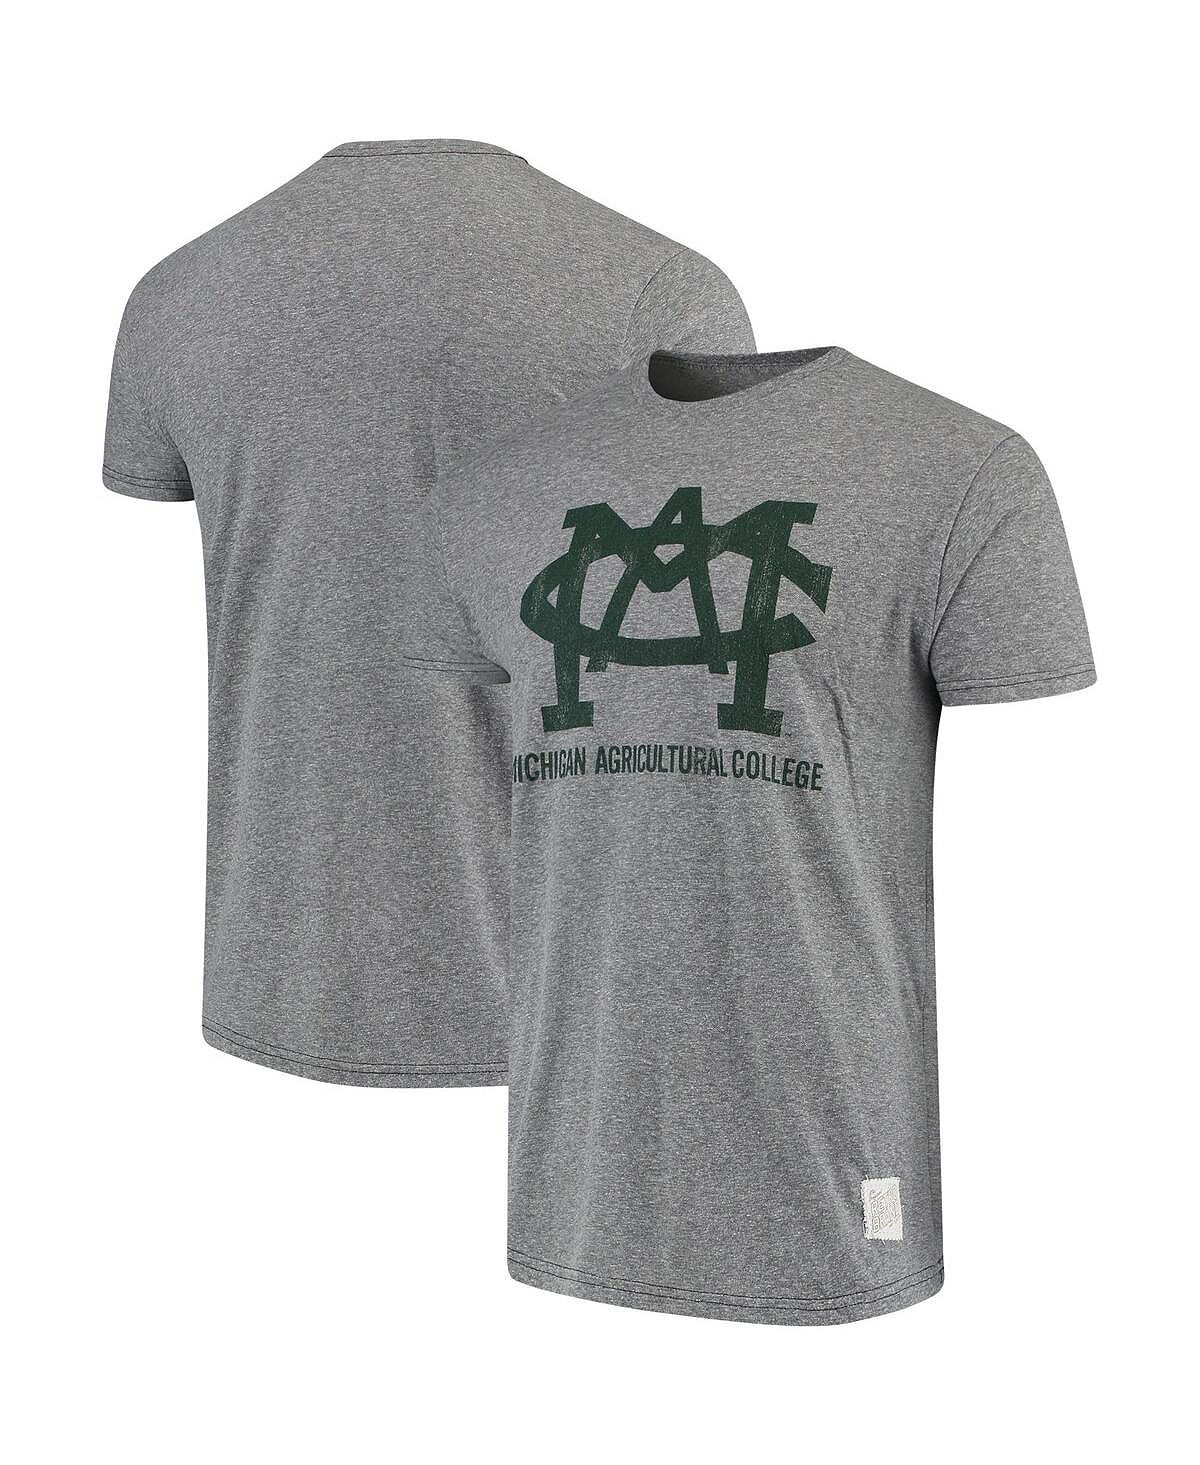 Мужская меланжевая серая футболка штата мичиган спартанцы мичиганского сельскохозяйственного колледжа tri-blend в винтажном стиле Original Retro Brand, мульти